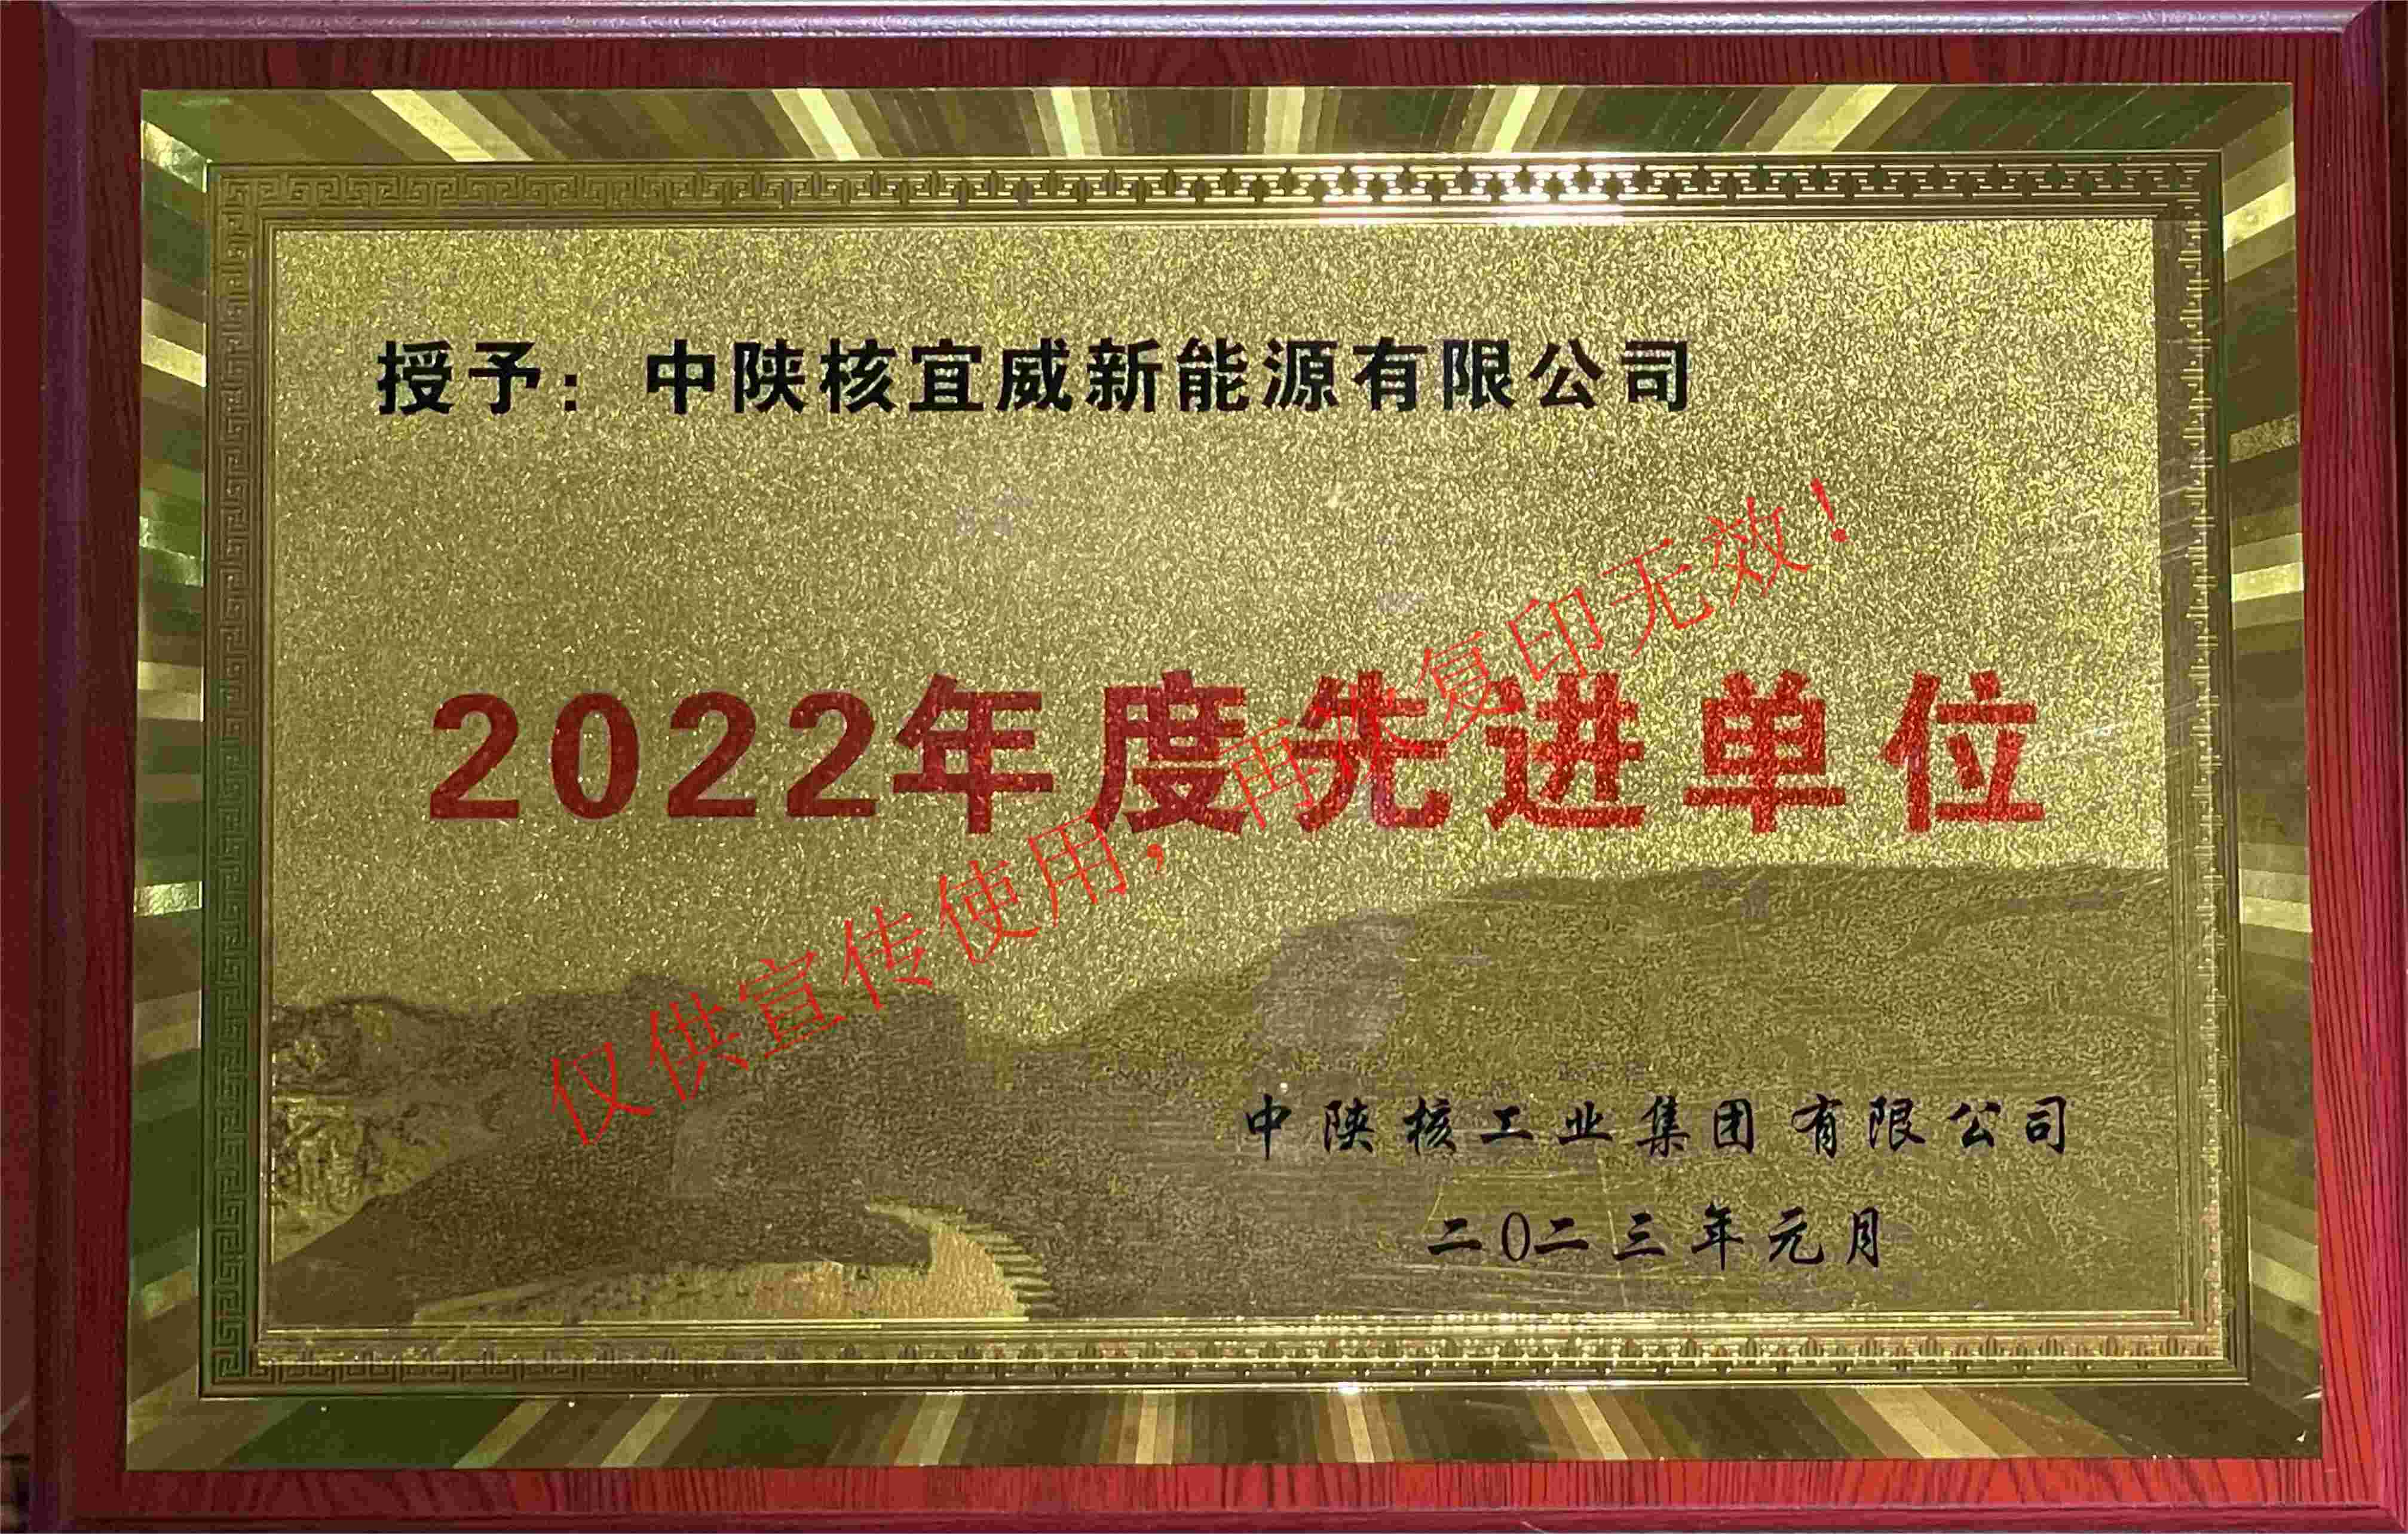 中陕核集团—2022年度先进单位